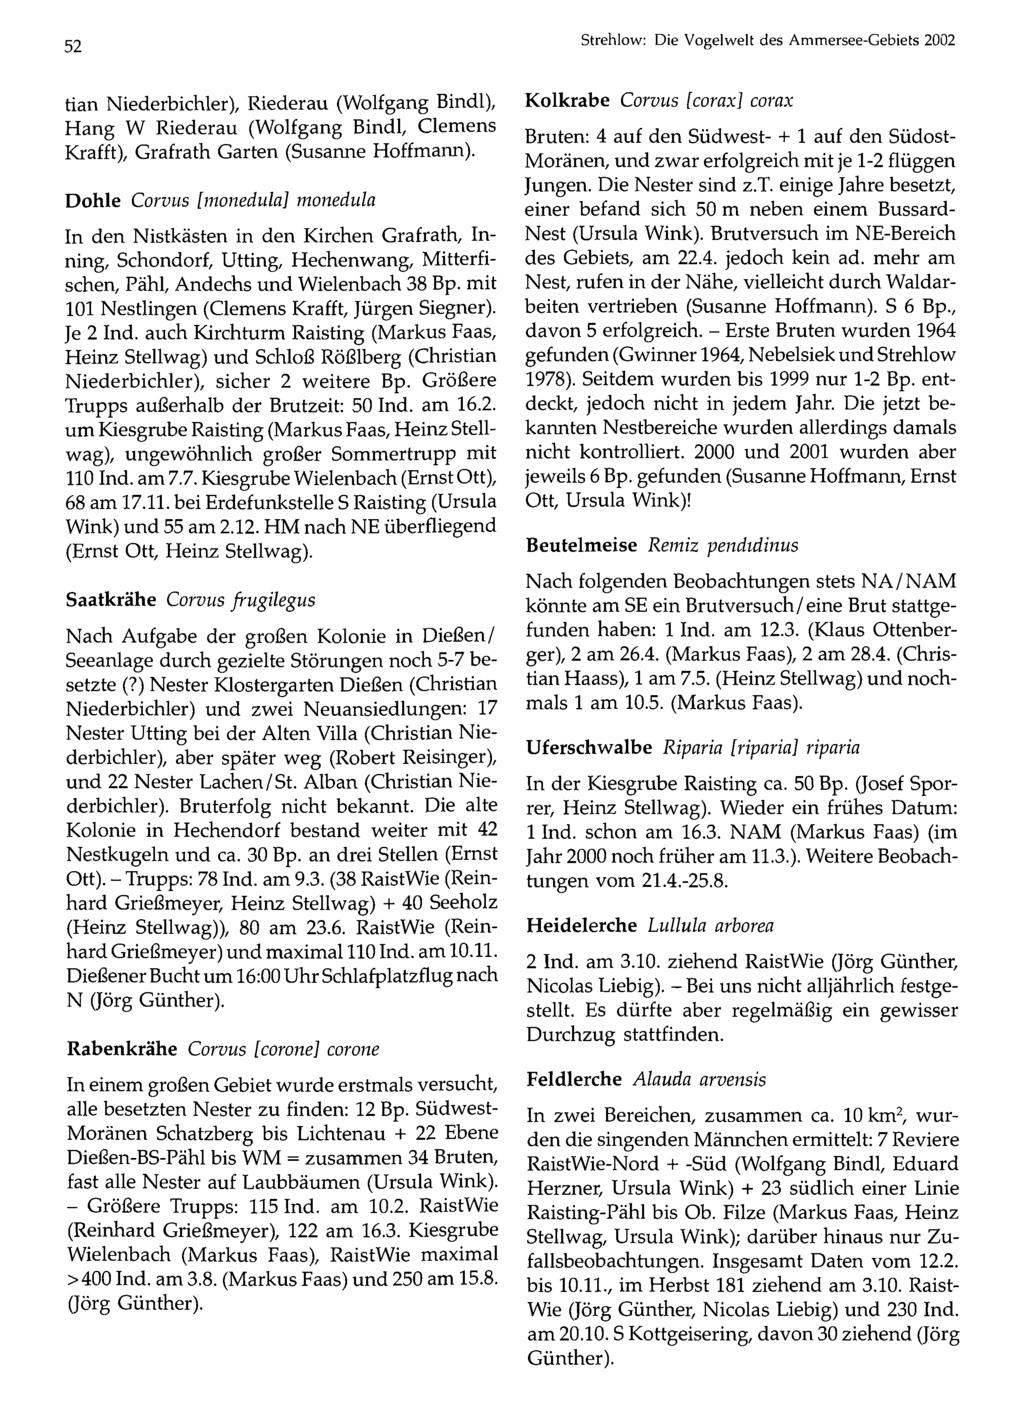 52 Ornithologische Gesellschaft Bayern, download unter Strehlow: www.biologiezentrum.